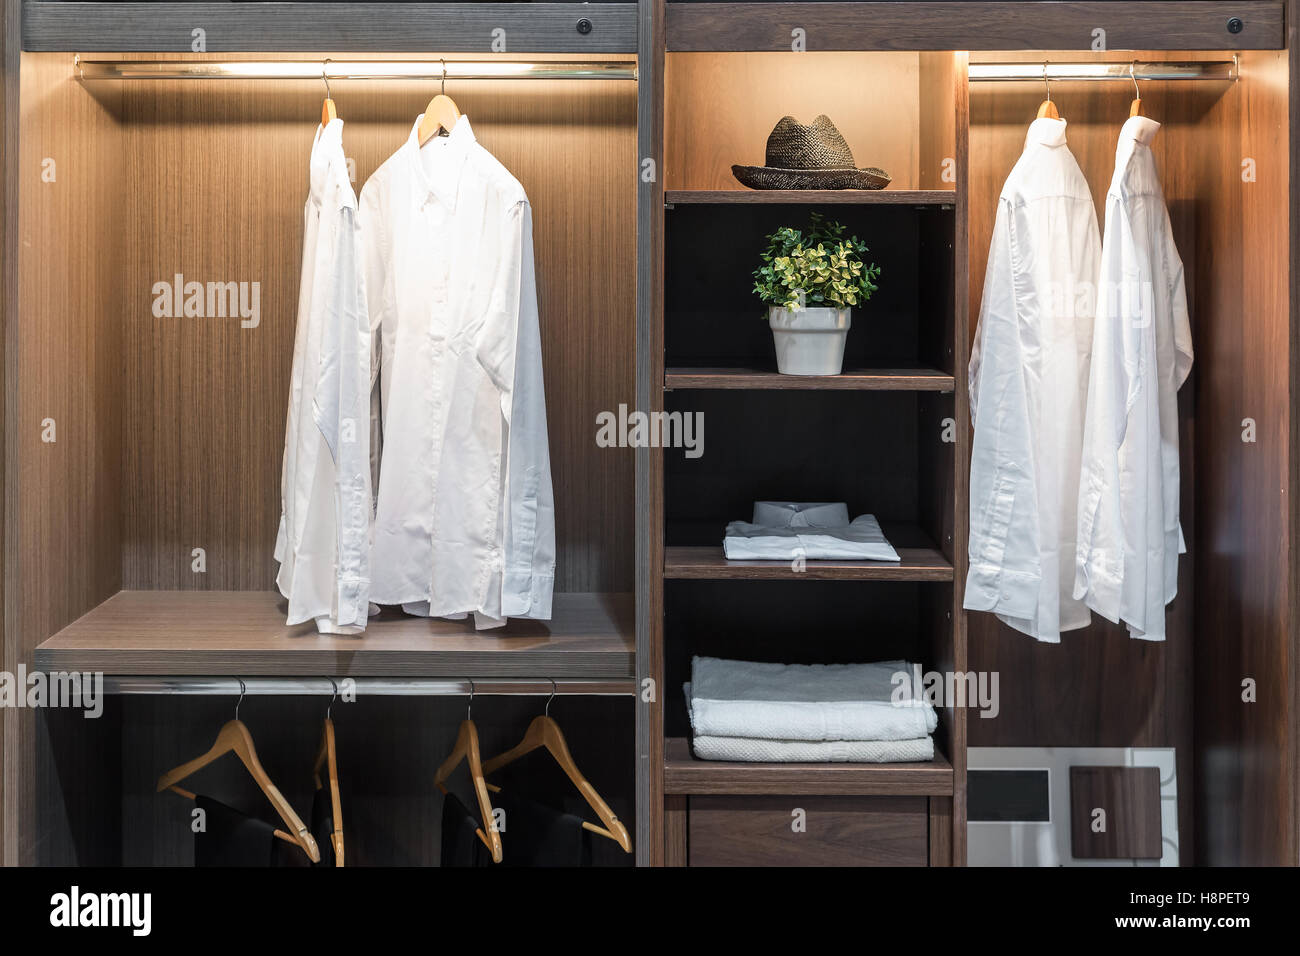 Interior moderno armario con camisa, pantalones, gorro y toalla en el estante. Foto de stock